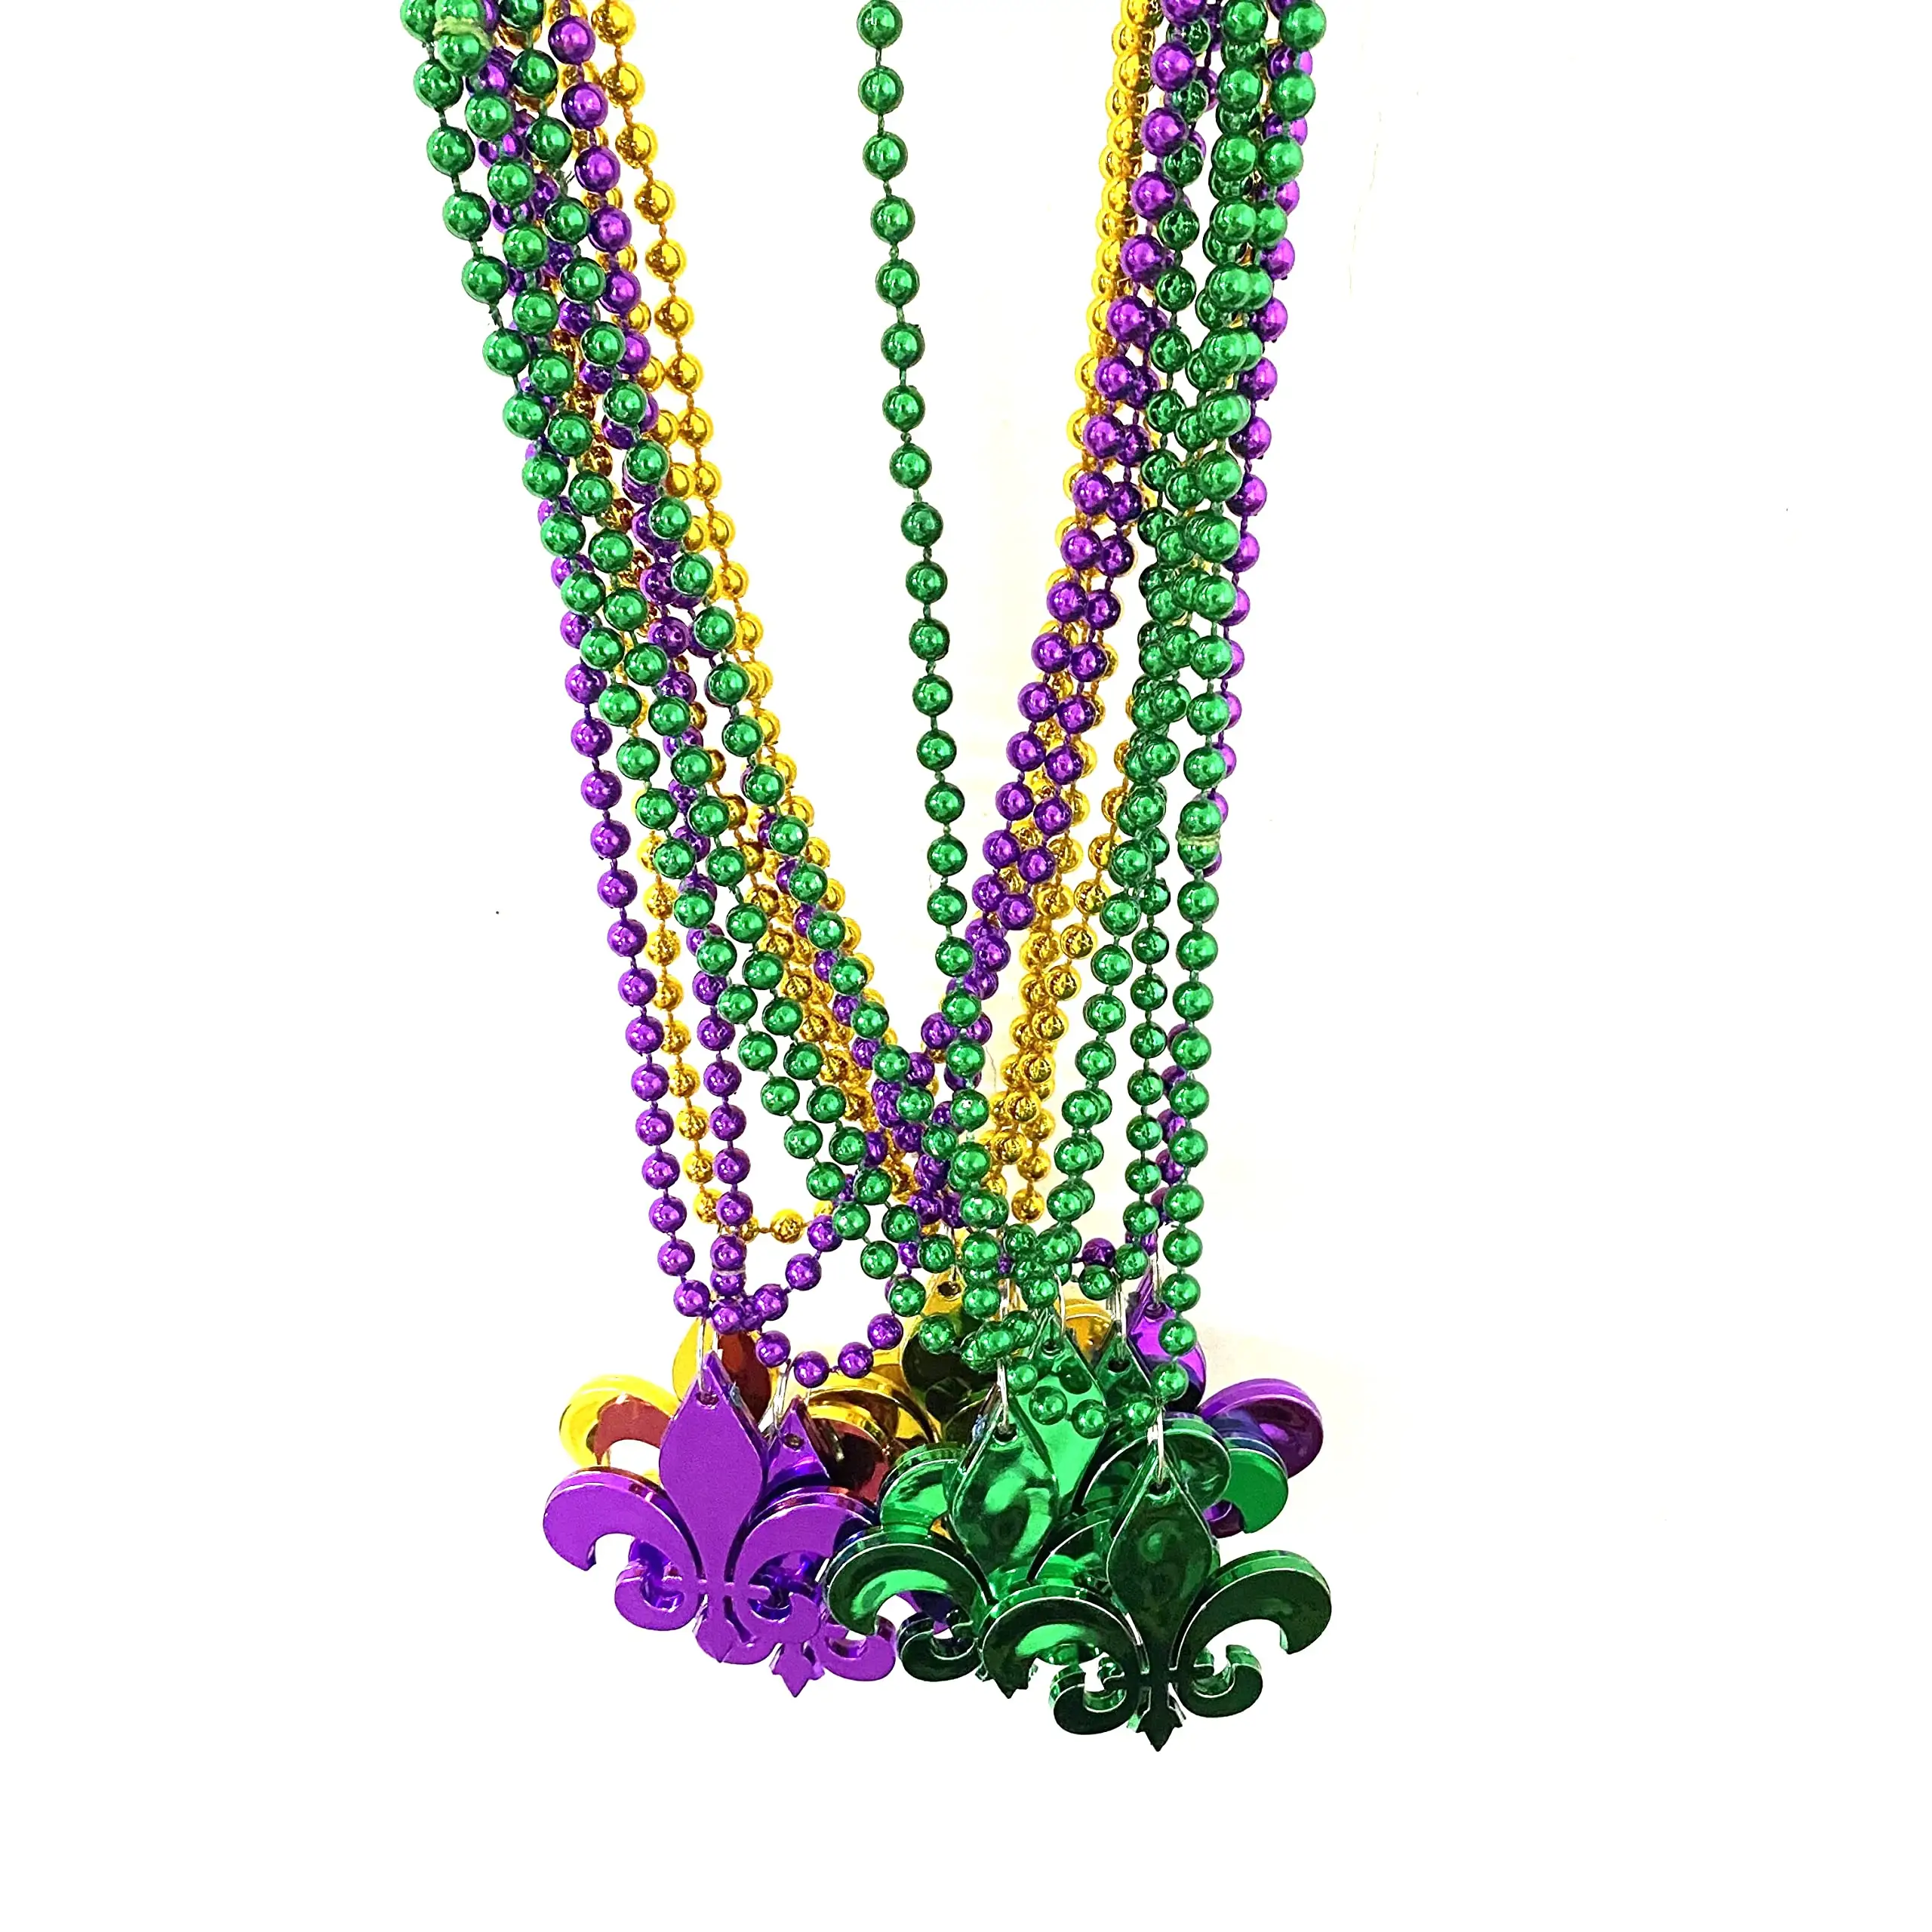 Mardi Gras perle collier or violet vert lys Mardi Gras décorations fête fournitures accessoires carnaval Festival fête cadeaux